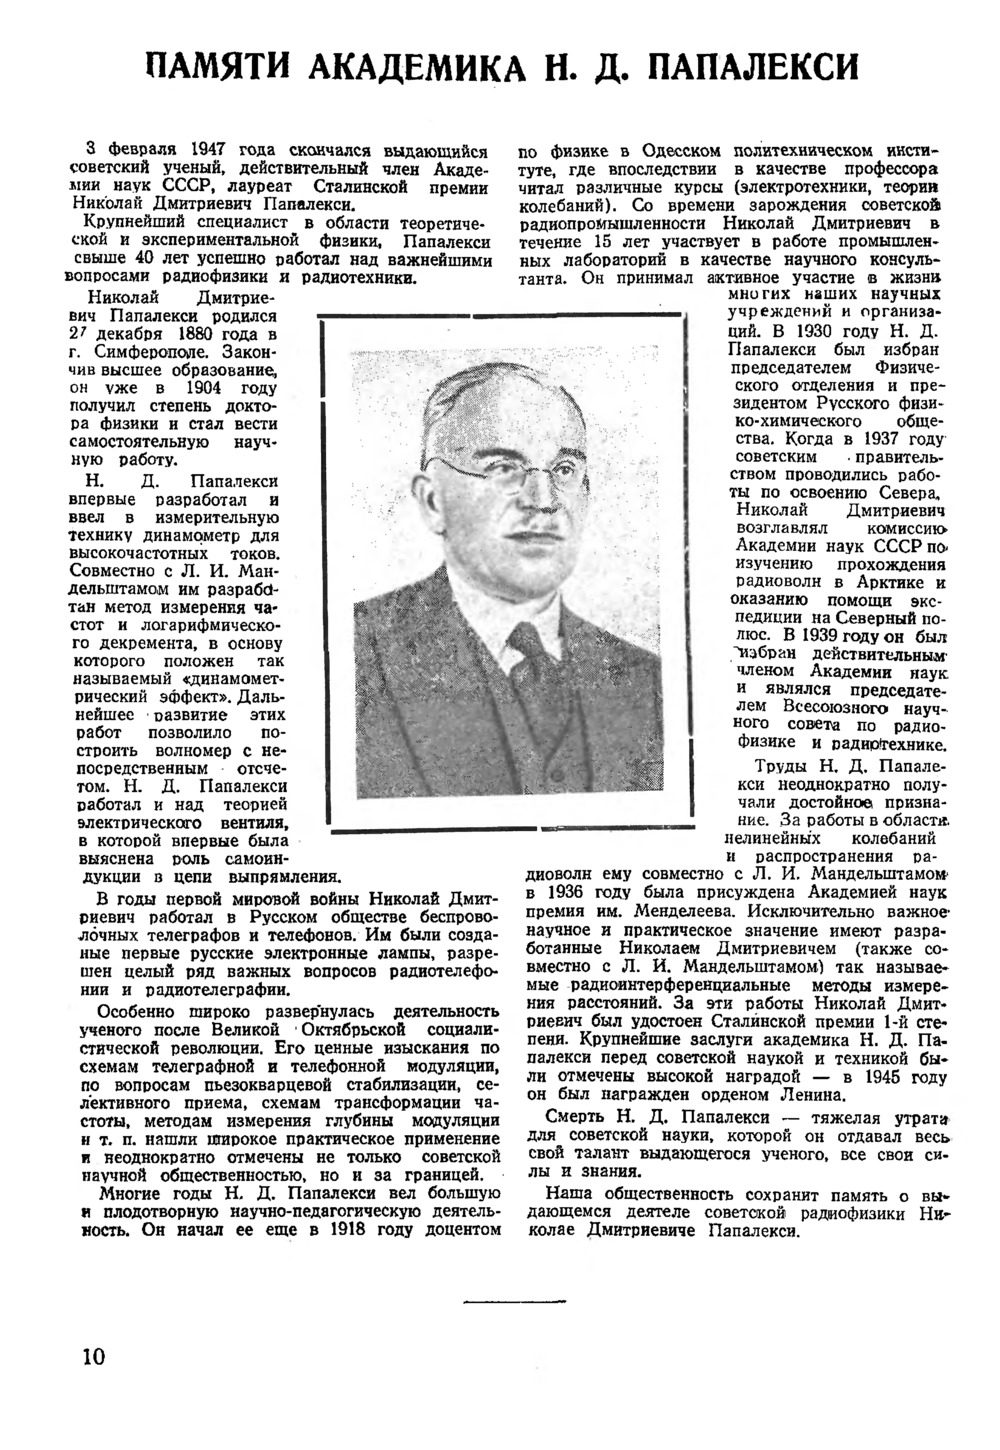 Стр. 10 журнала «Радио» № 3 за 1947 год